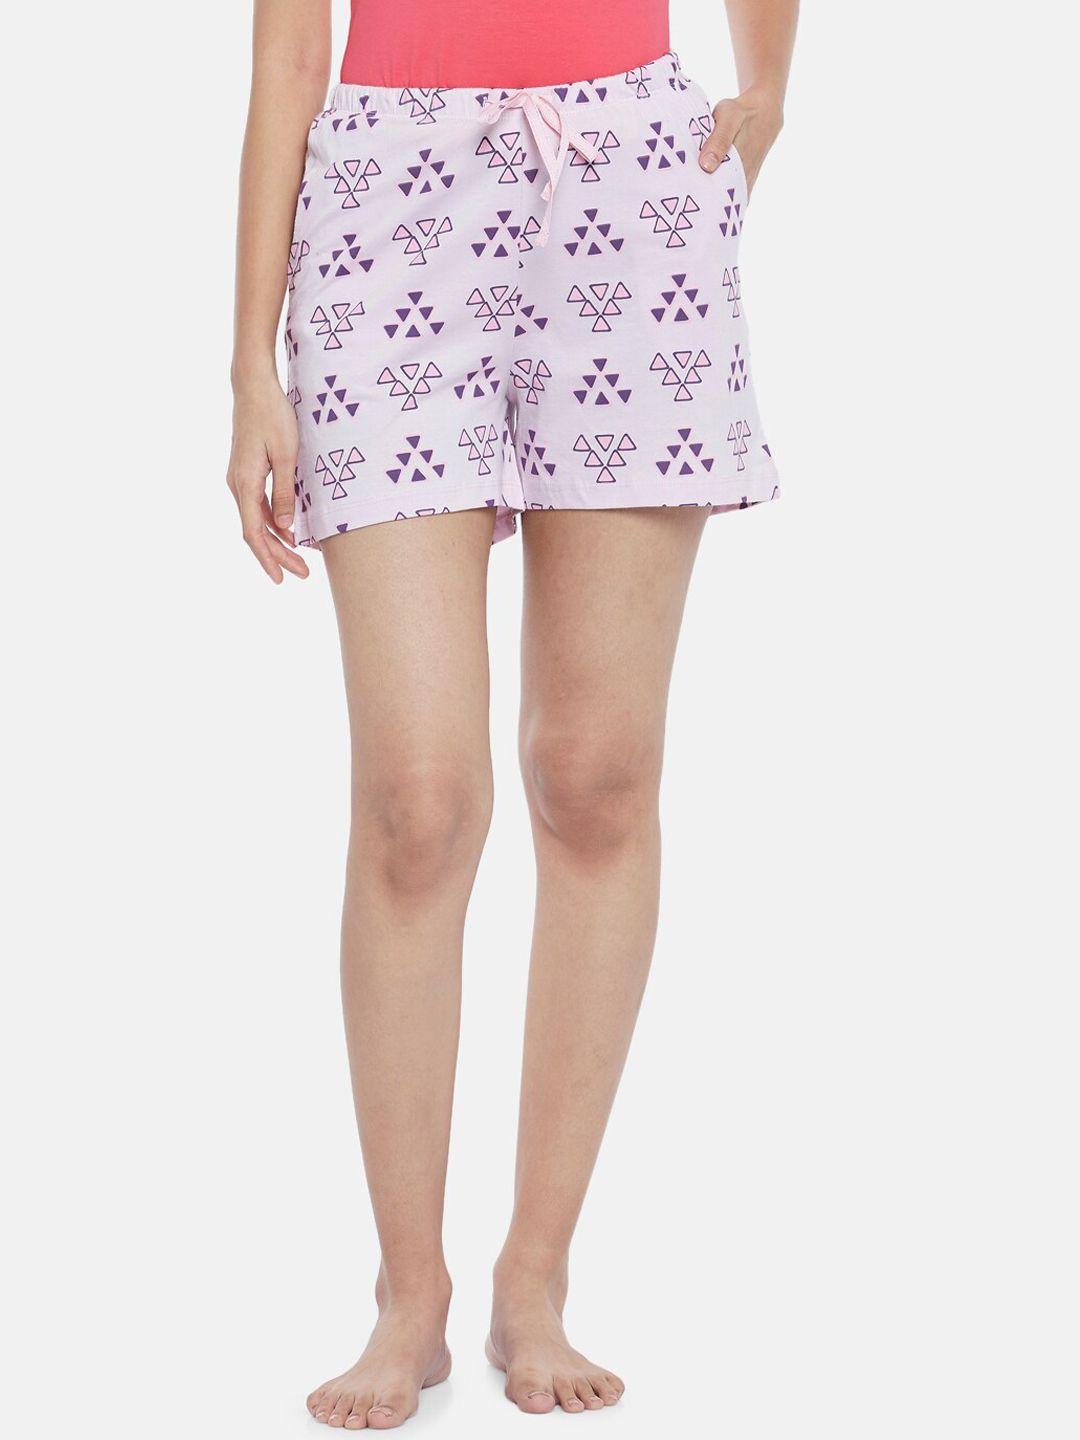 dreamz-by-pantaloons-women-lavender-&-purple-printed-cotton-lounge-shorts